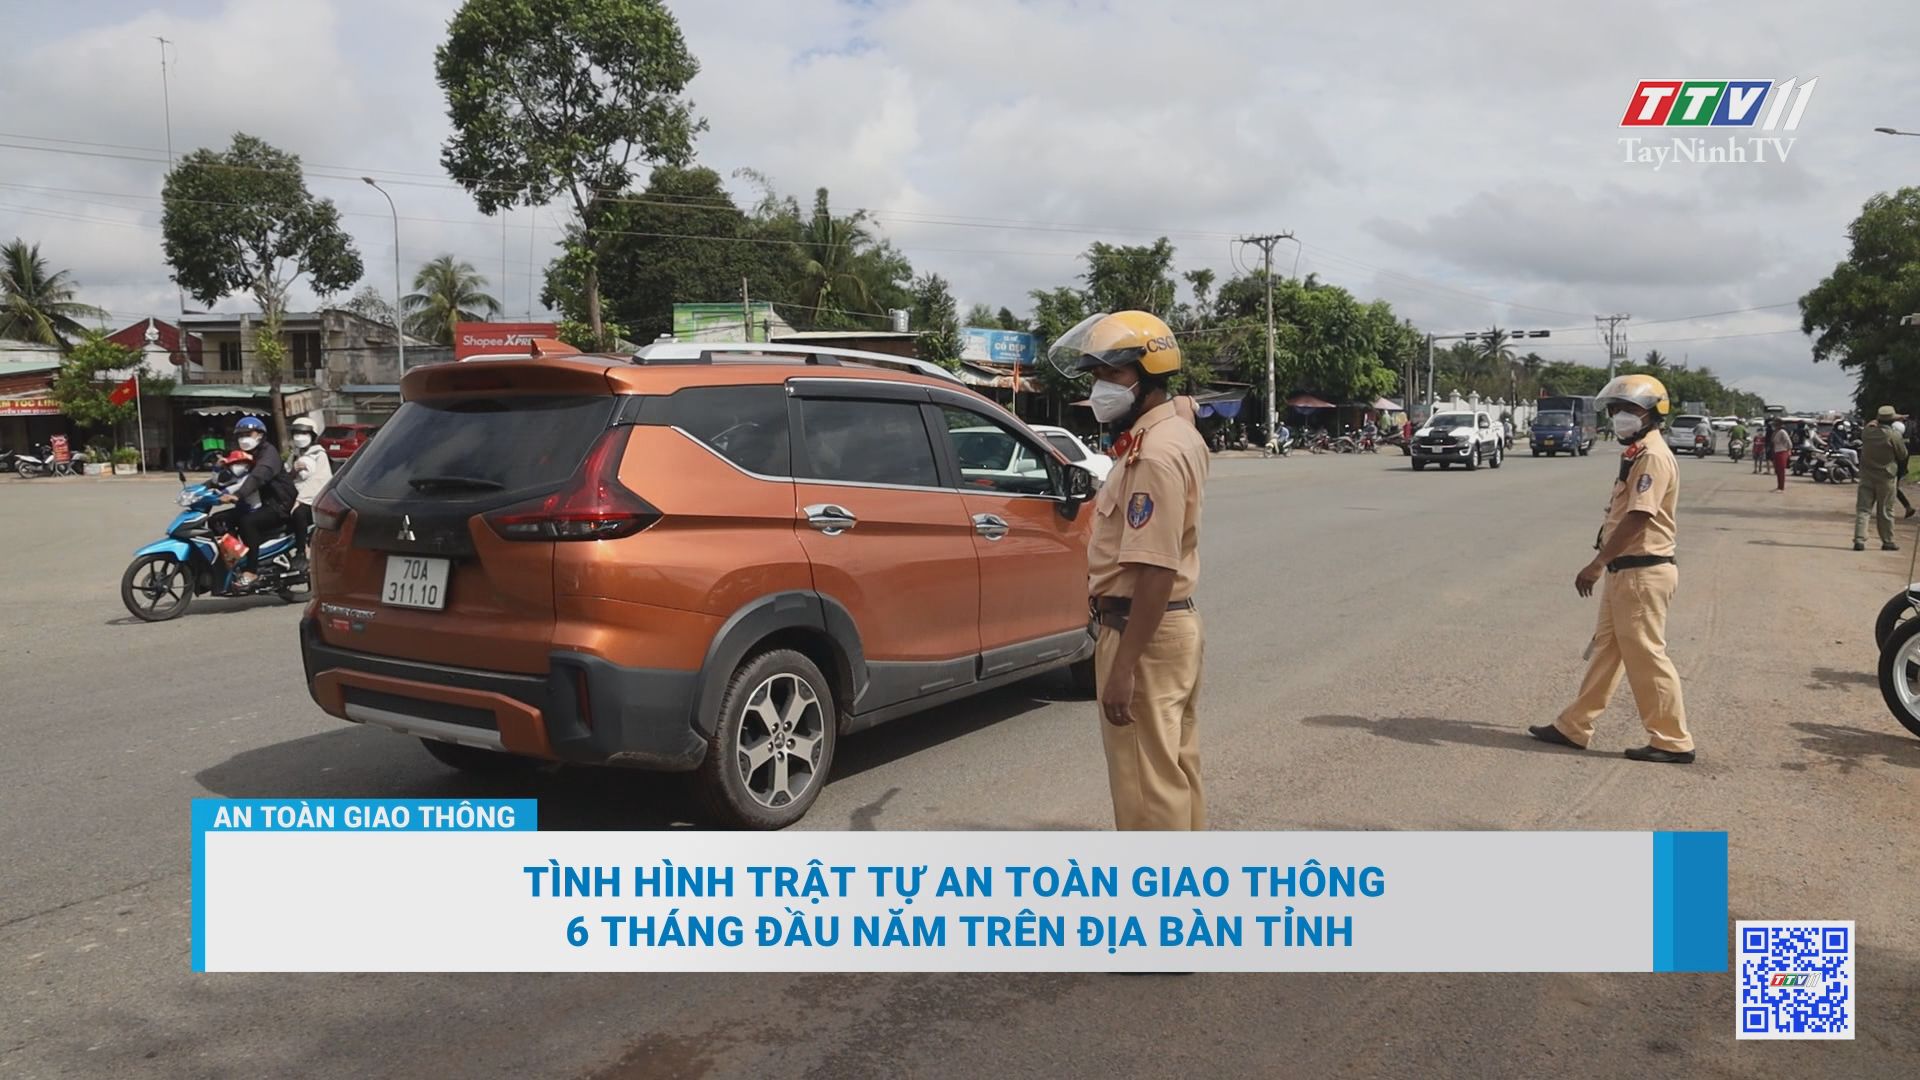 Tình hình trật tự ATGT 6 tháng đầu năm trên địa bàn tỉnh | An toàn giao thông | TayNinhTV